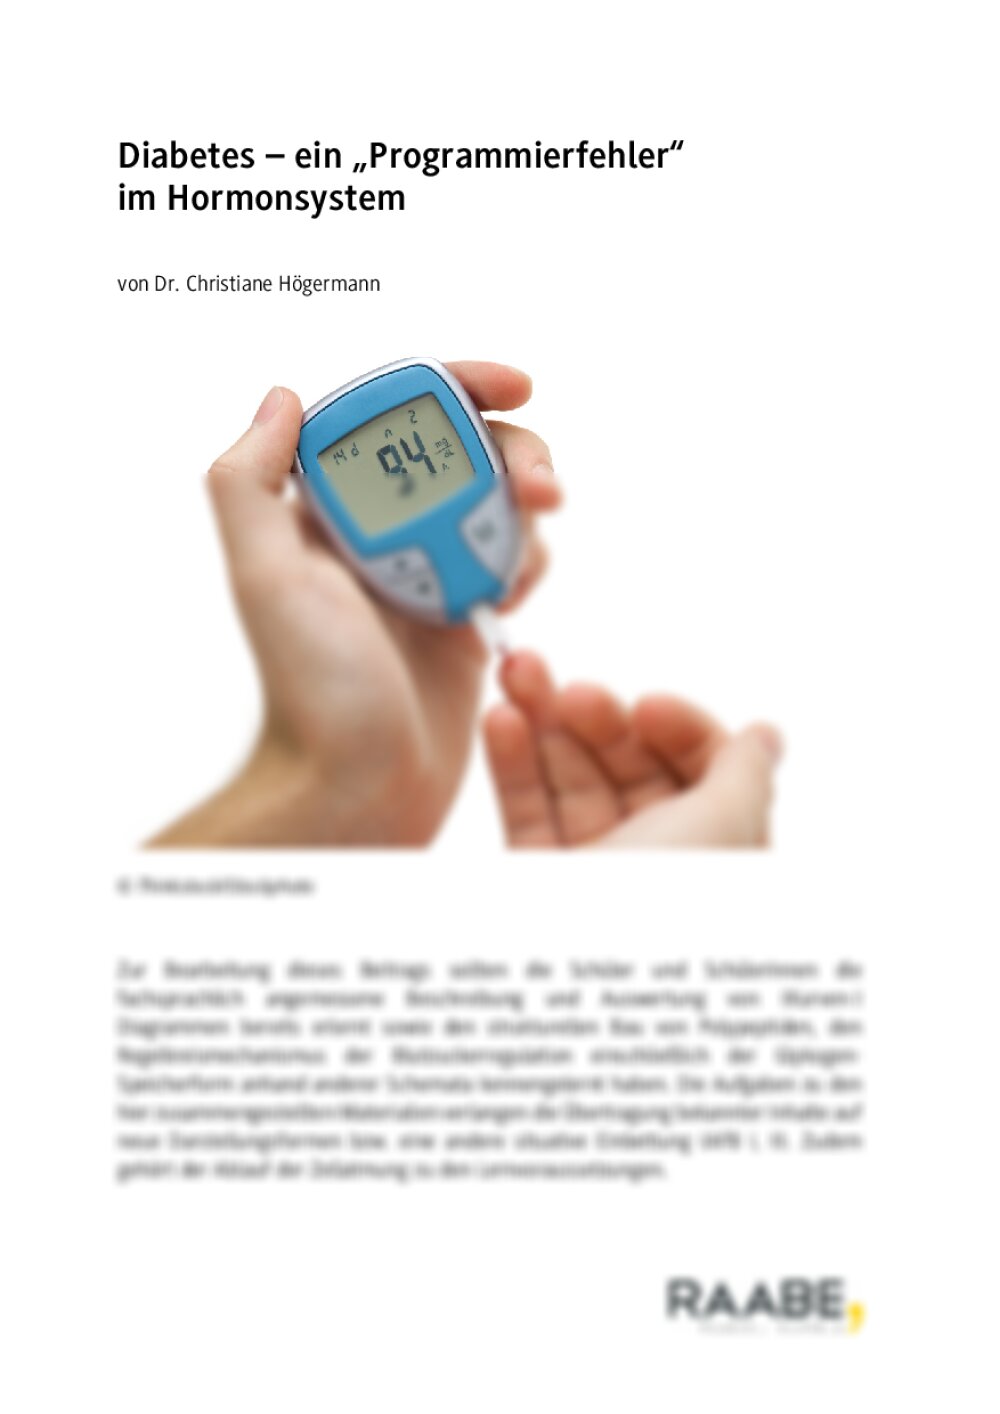 Diabetes – ein "Programmierfehler" im Hormonsystem - Seite 1